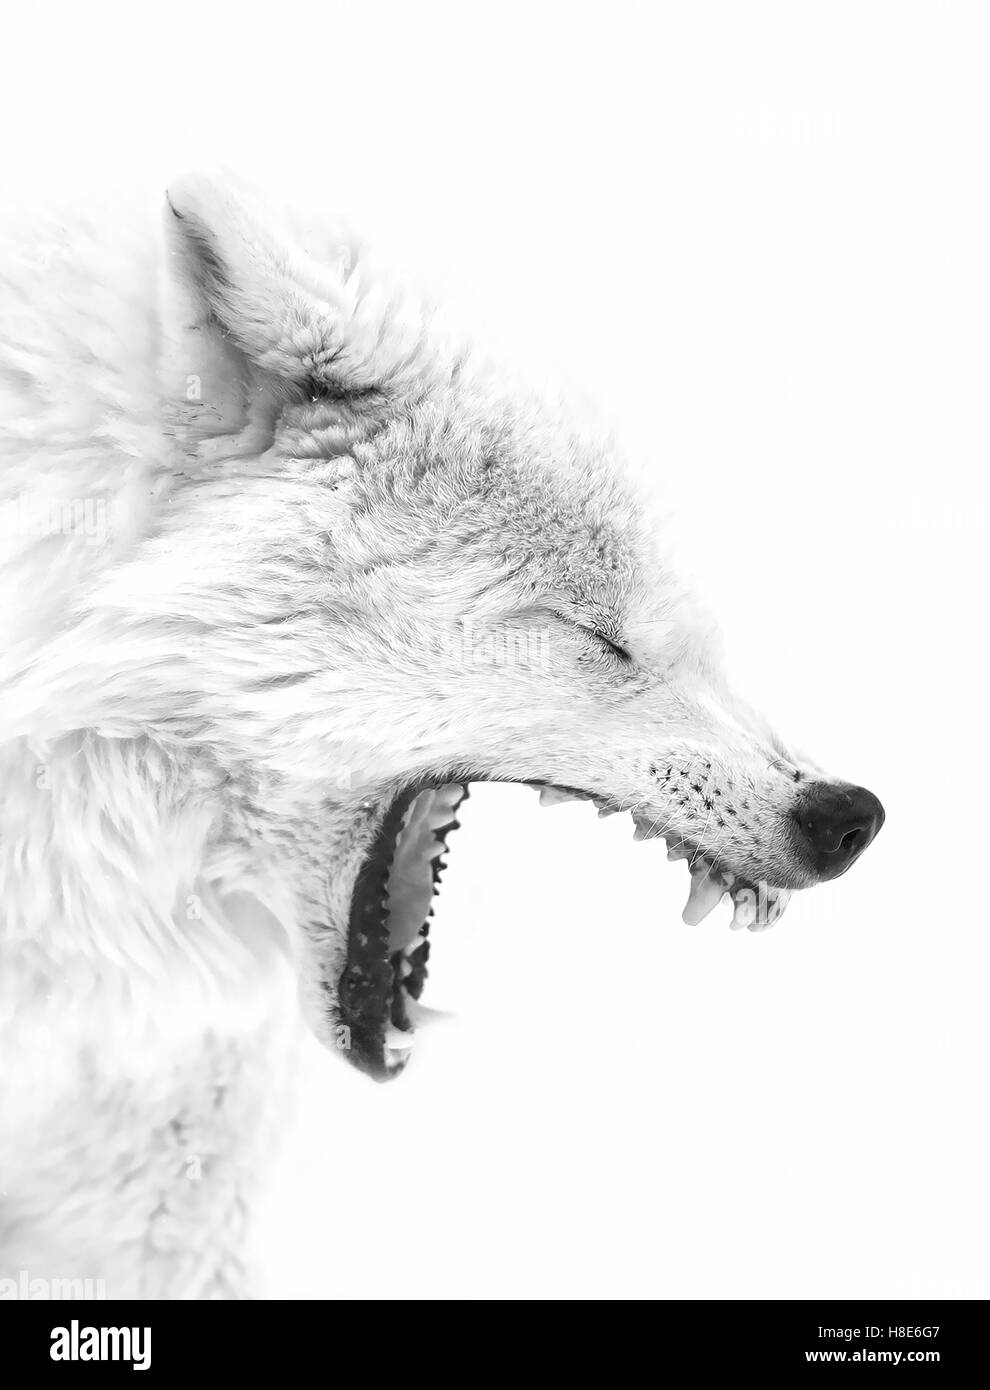 Loup arctique barking en hiver au Canada Banque D'Images